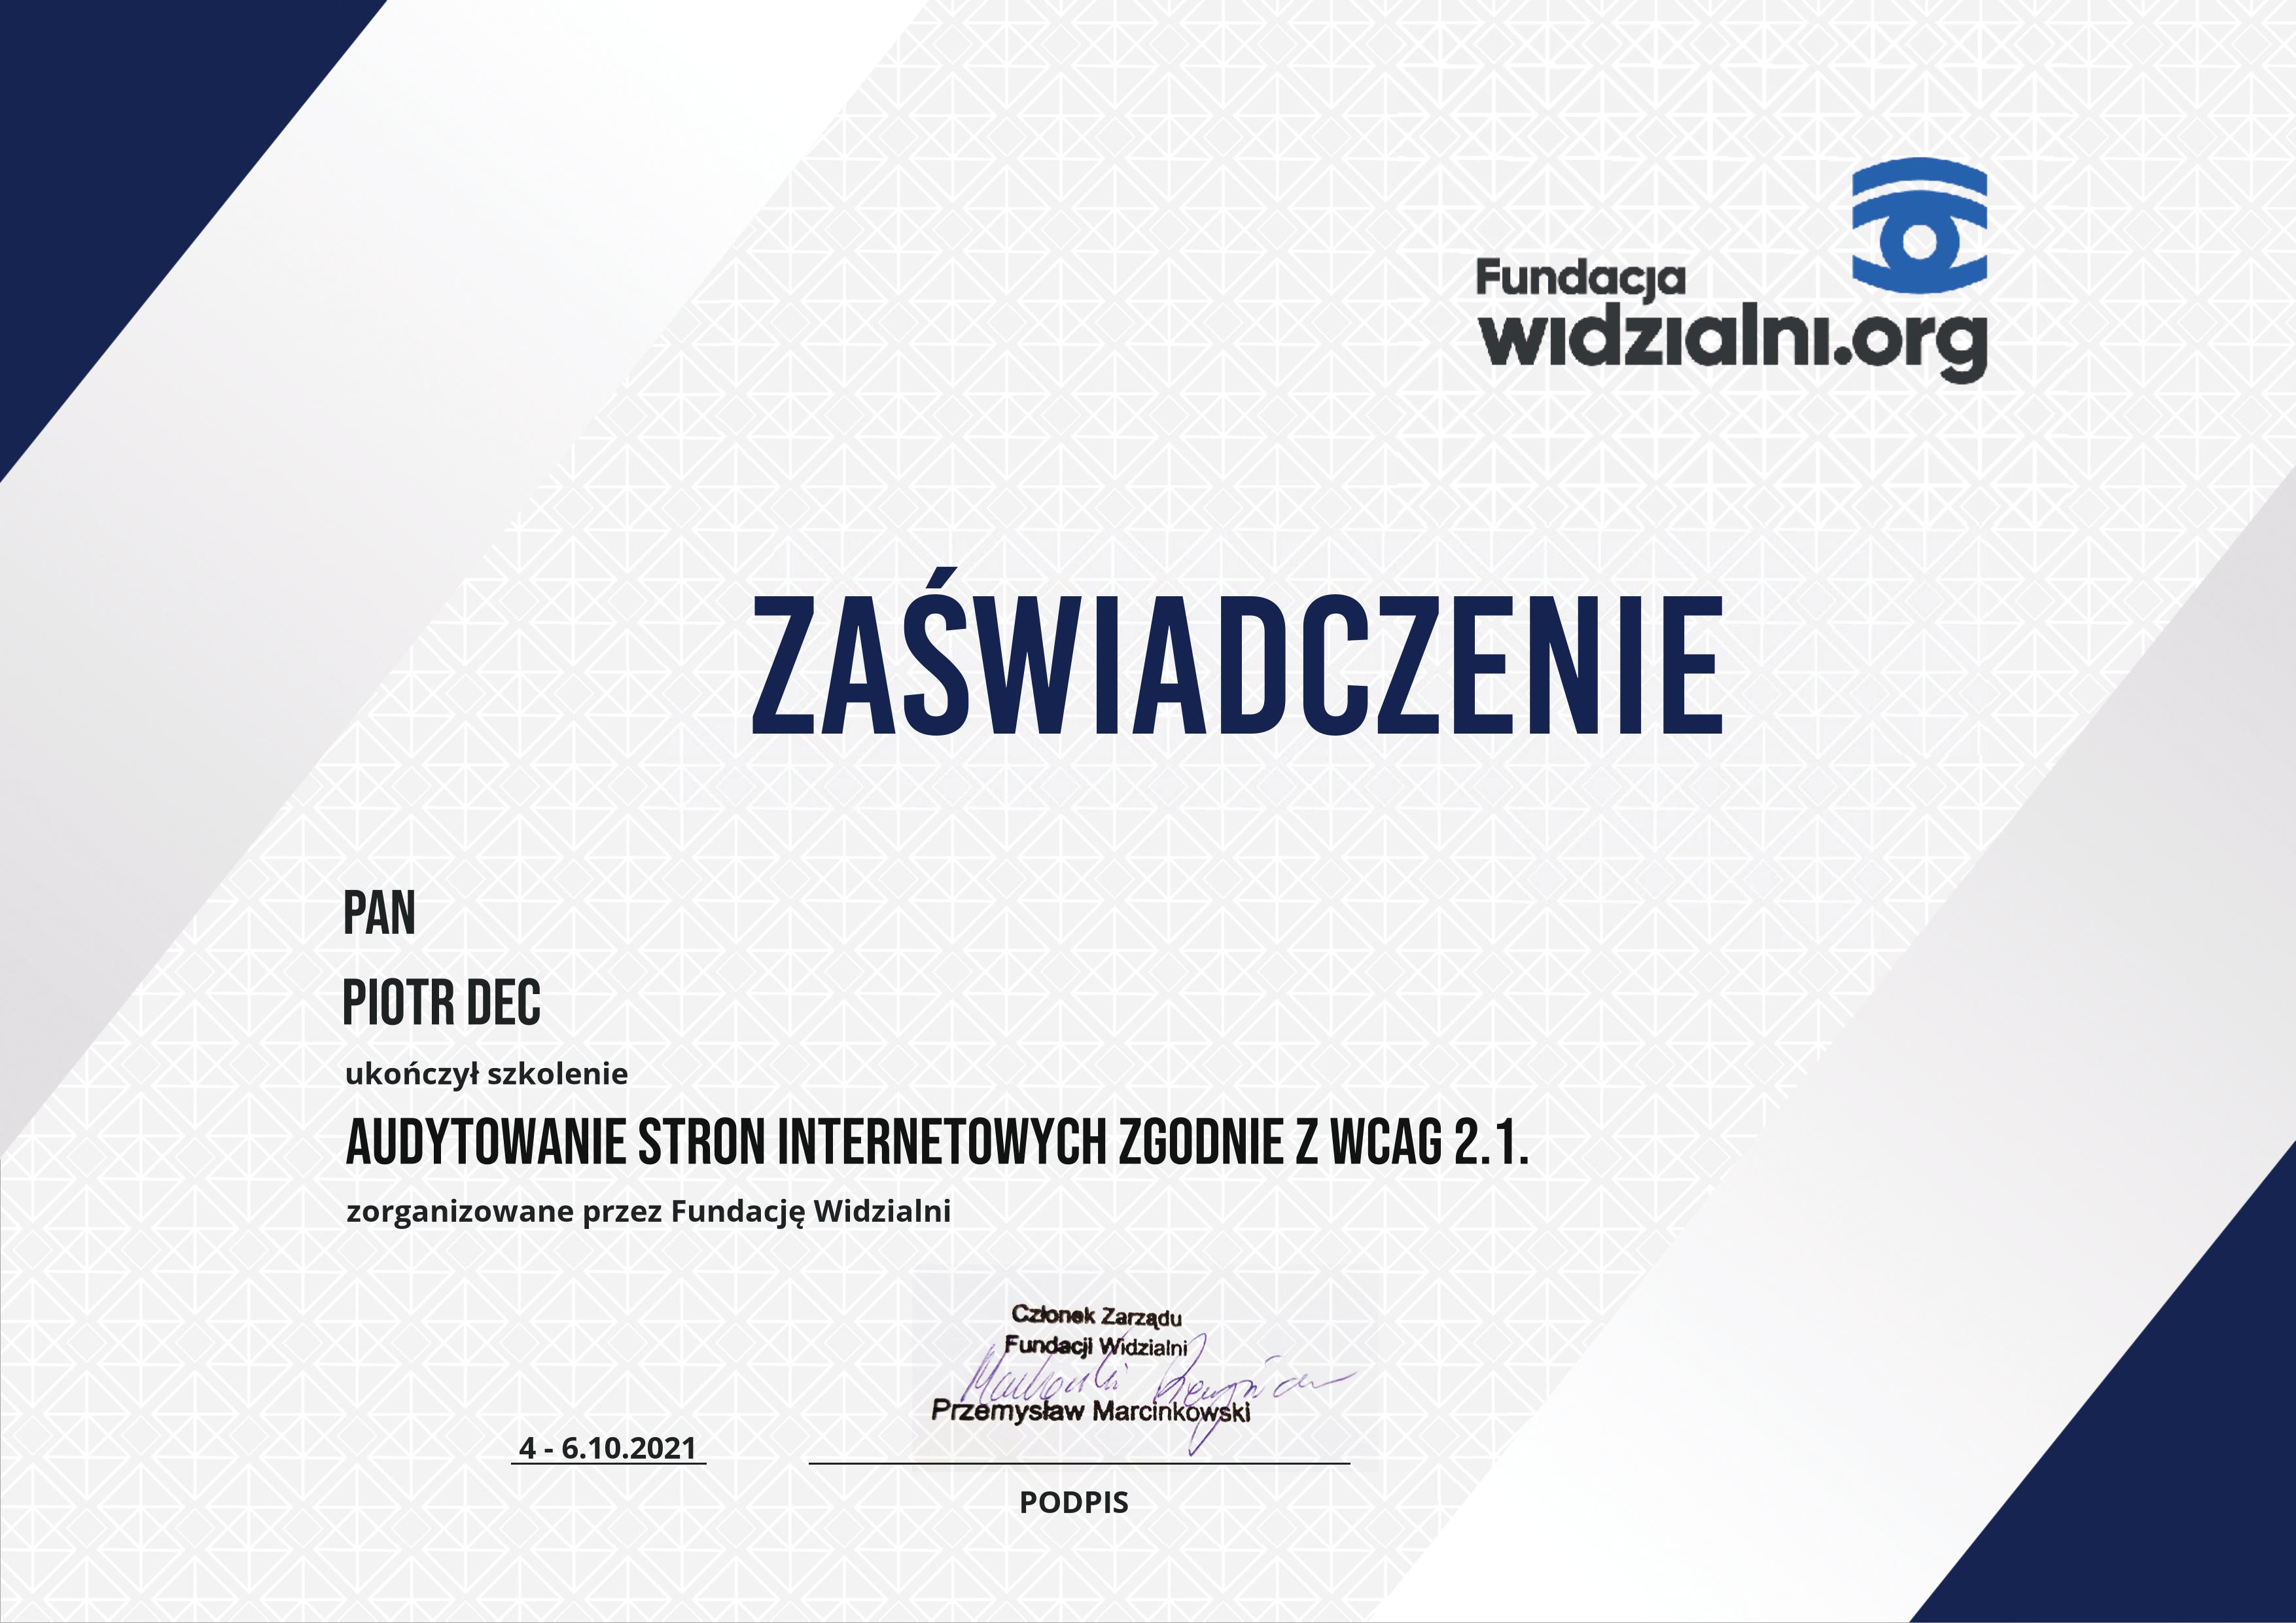 certyfikat ukończnia szkolenia Audytowanie Stron Internetowych zgodnie z WCAG 2.1, zorganizowanego przez Fundację Widzialni.
                                    Certyfikat wystawiony na Pana Łukasza Trzaskę - pracownika firmy Pollyart